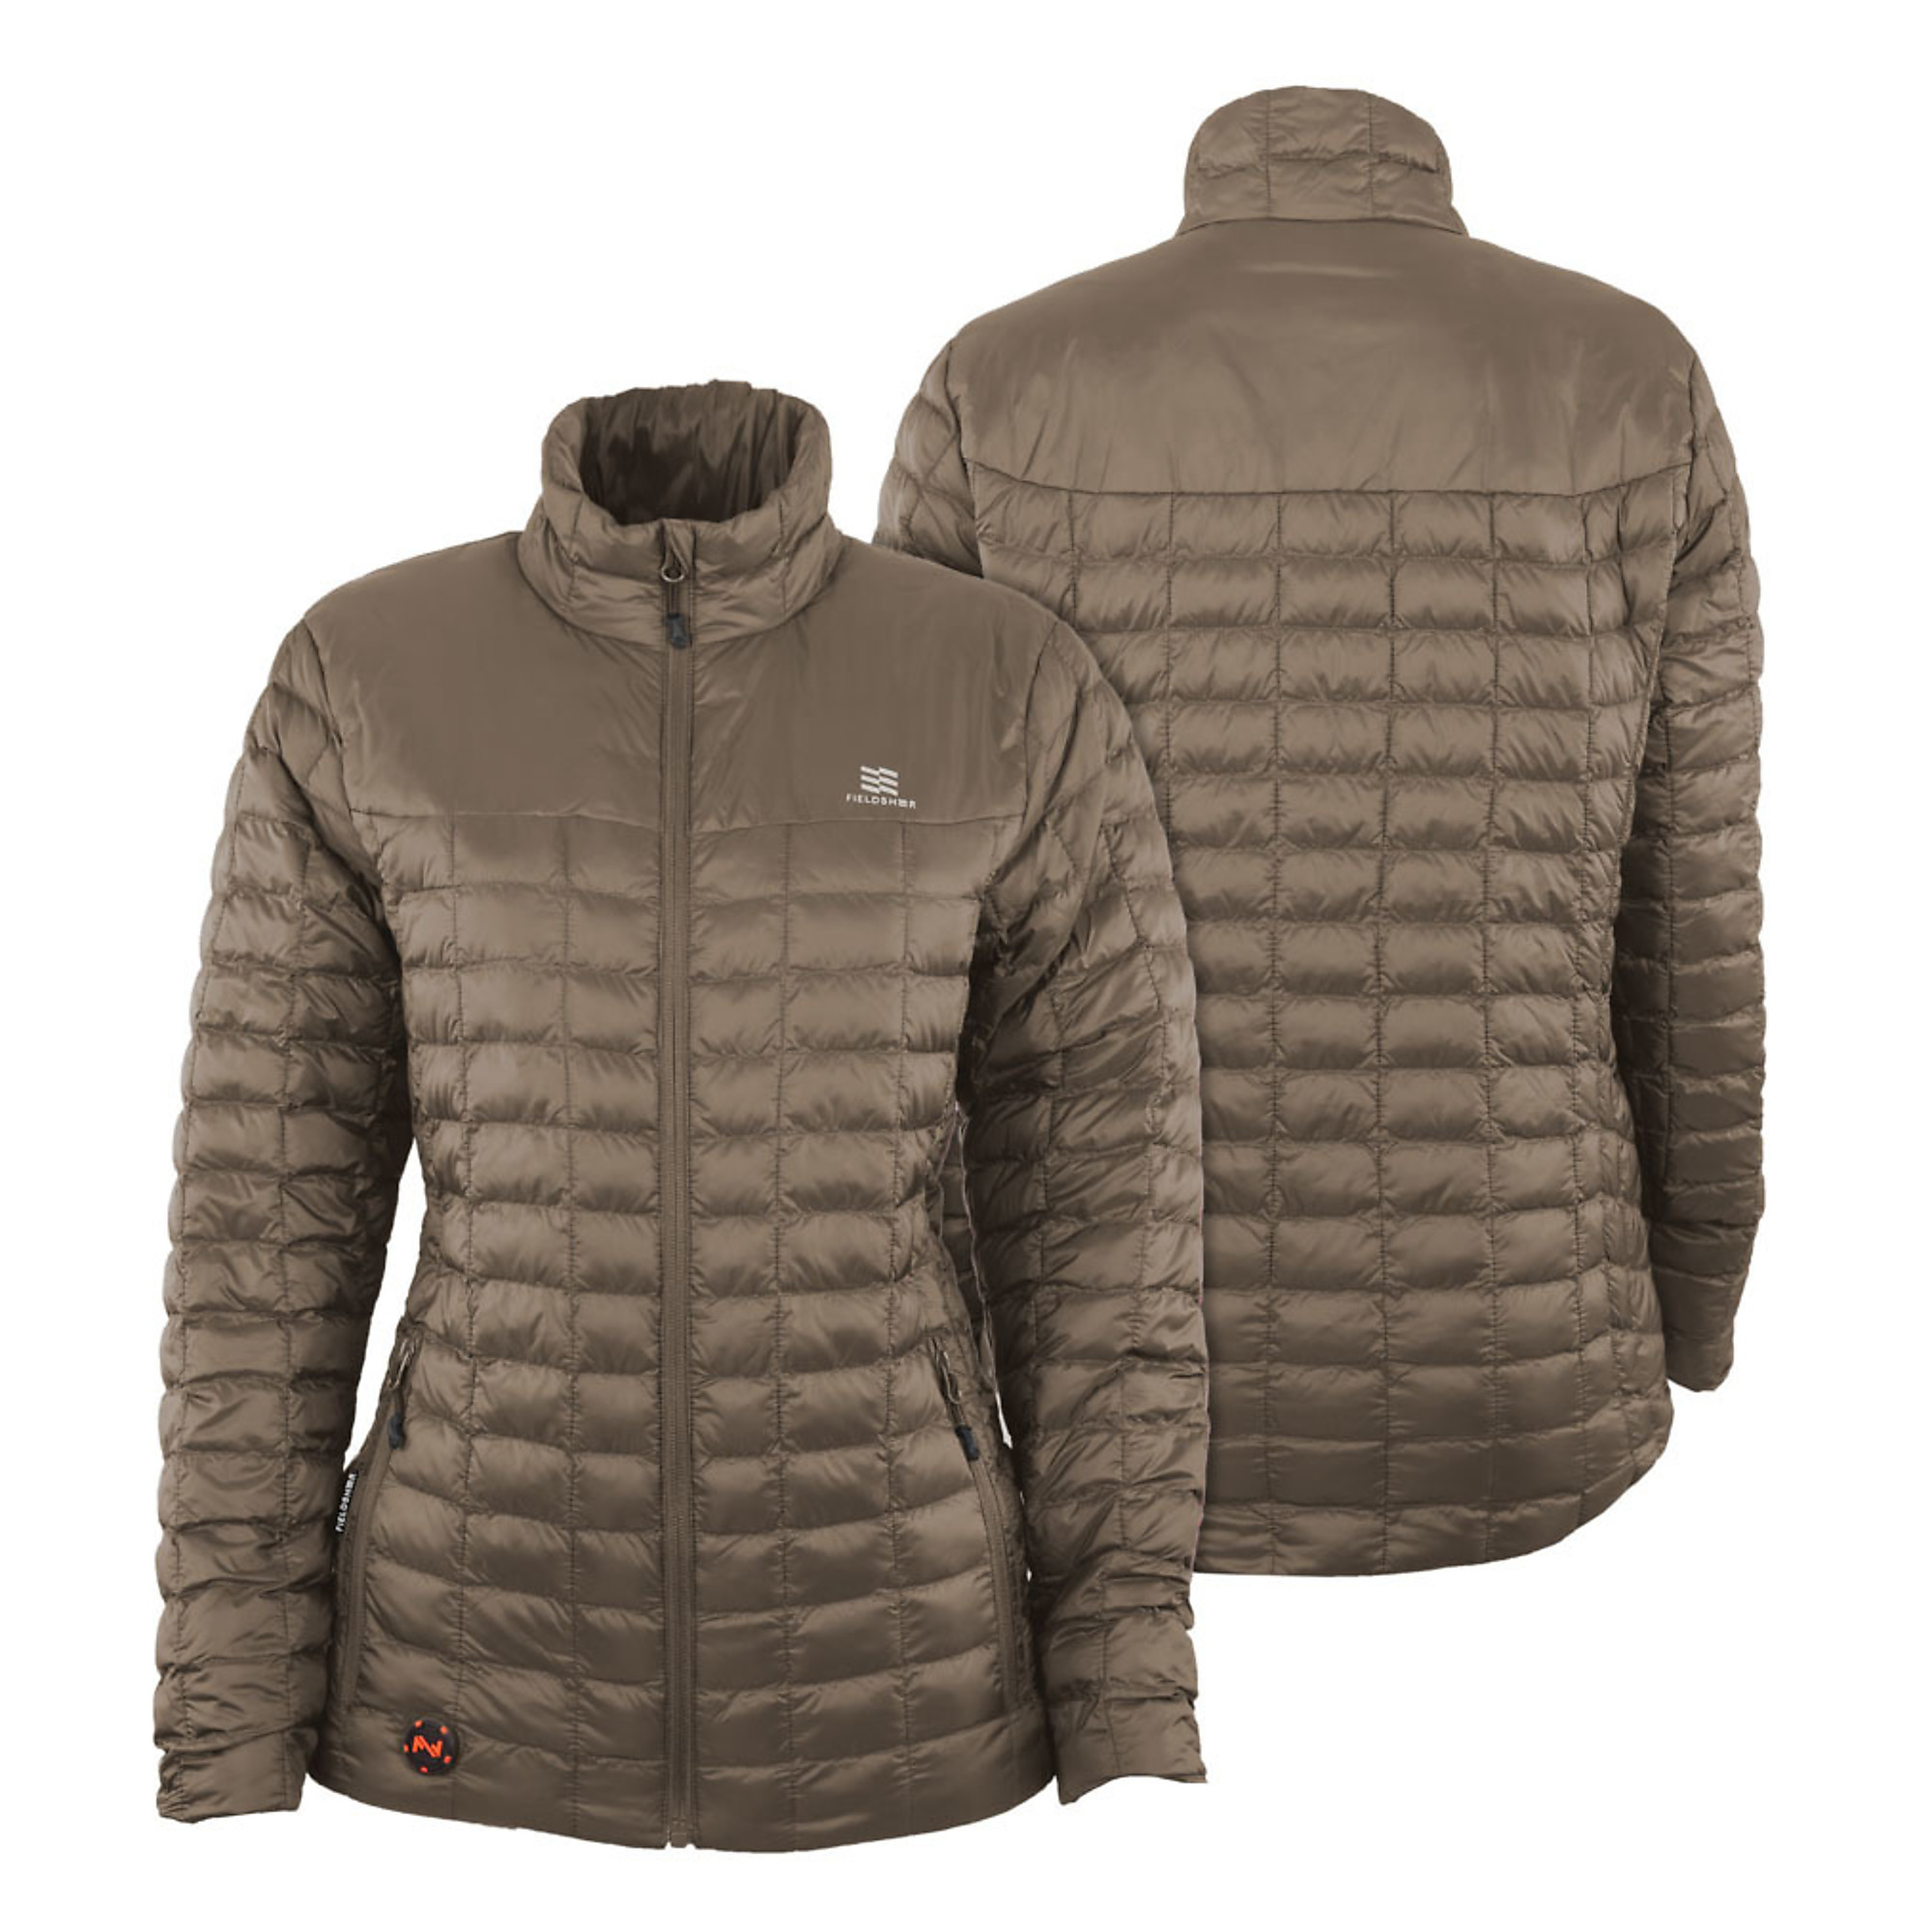 Fieldsheer, Women's 7.4v Backcountry Heated Jacket, Size XL, Color Tan, Model MWWJ04340521